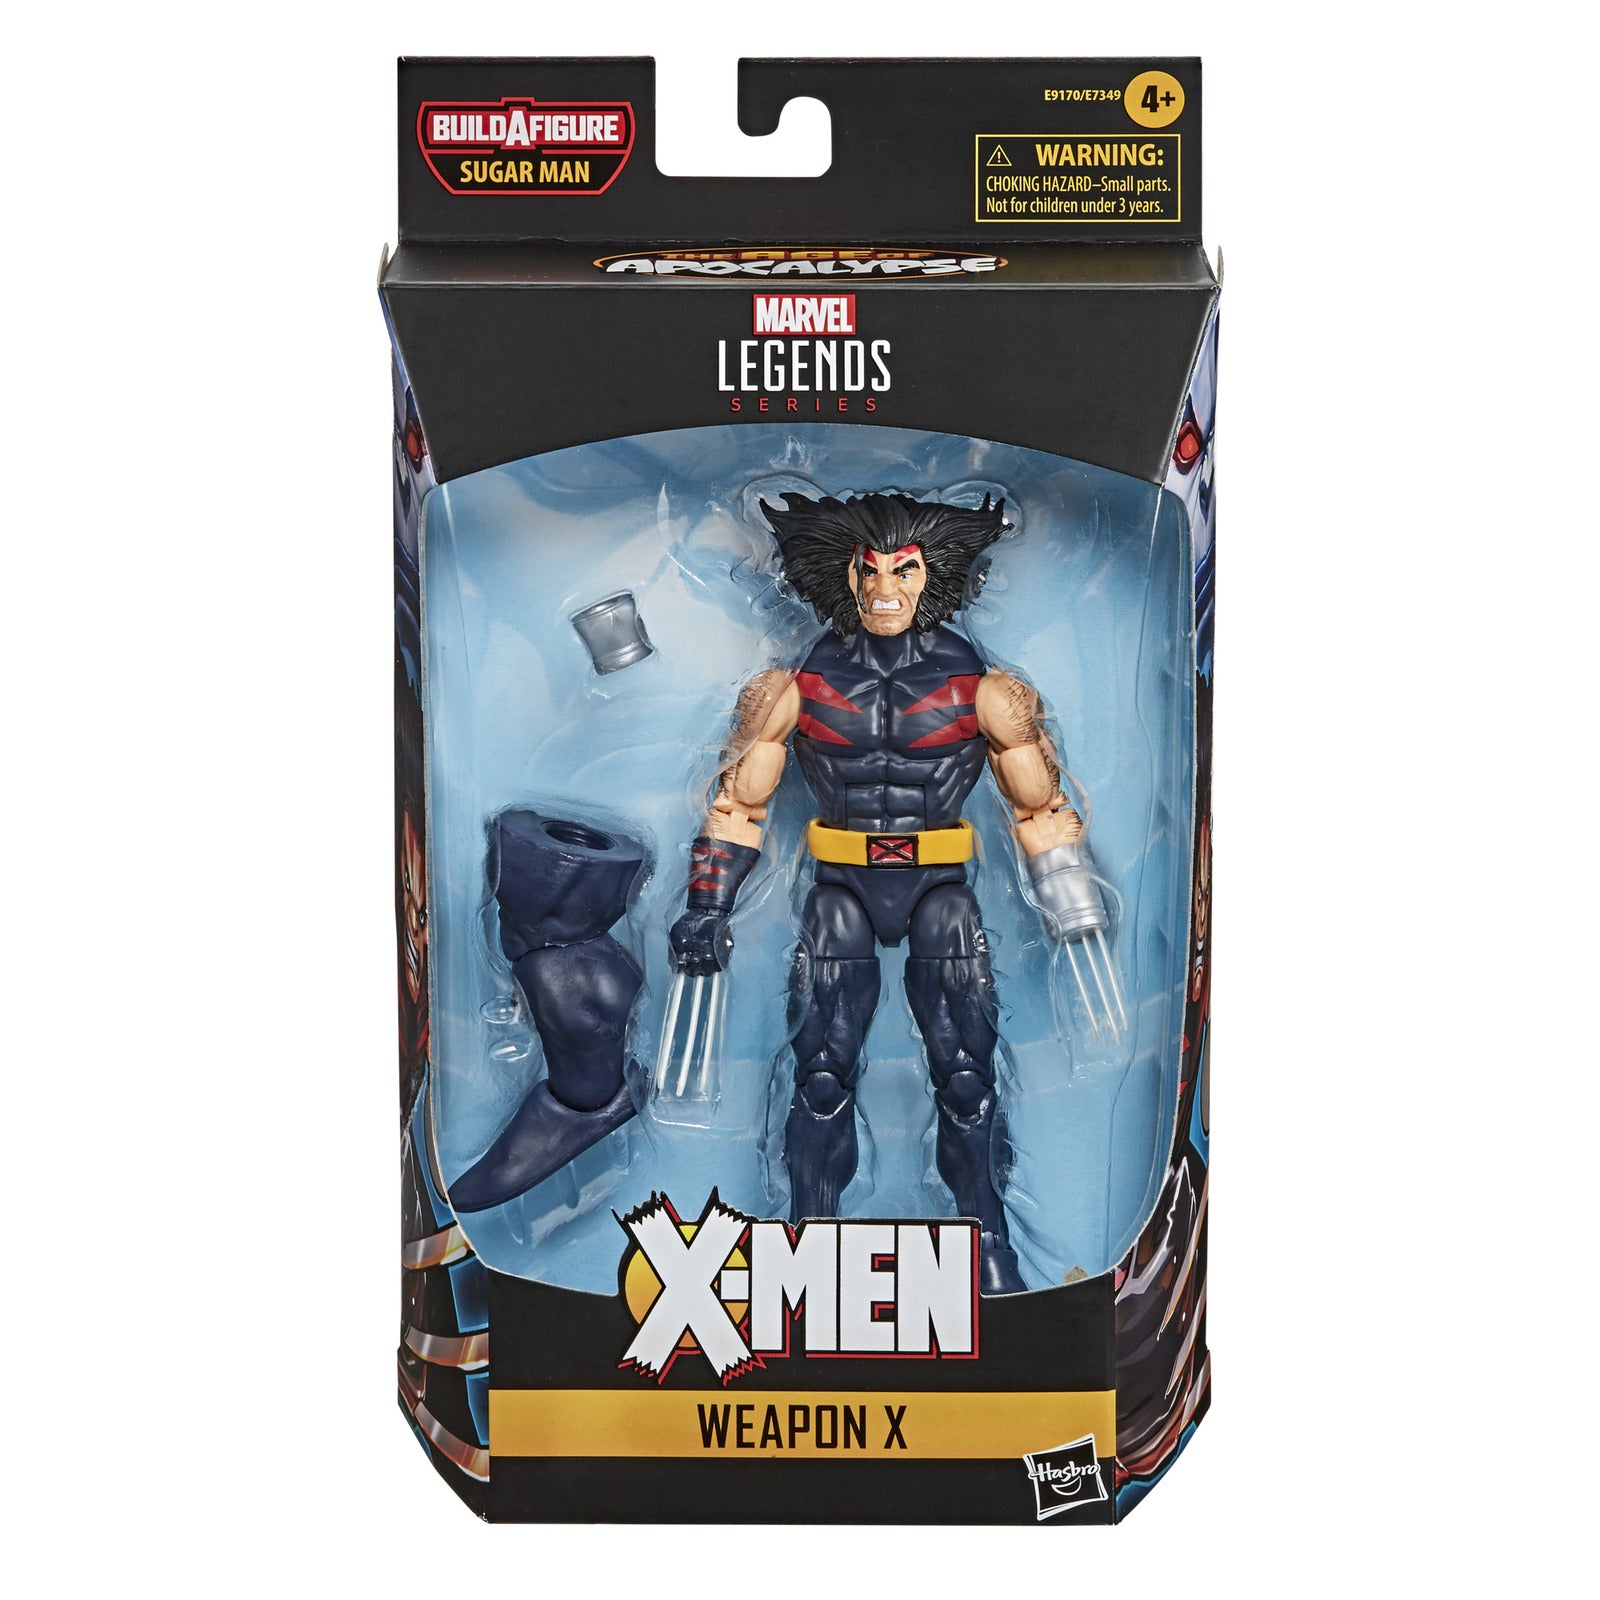 Marvel Legends: Weapon X - 6" Action Figure